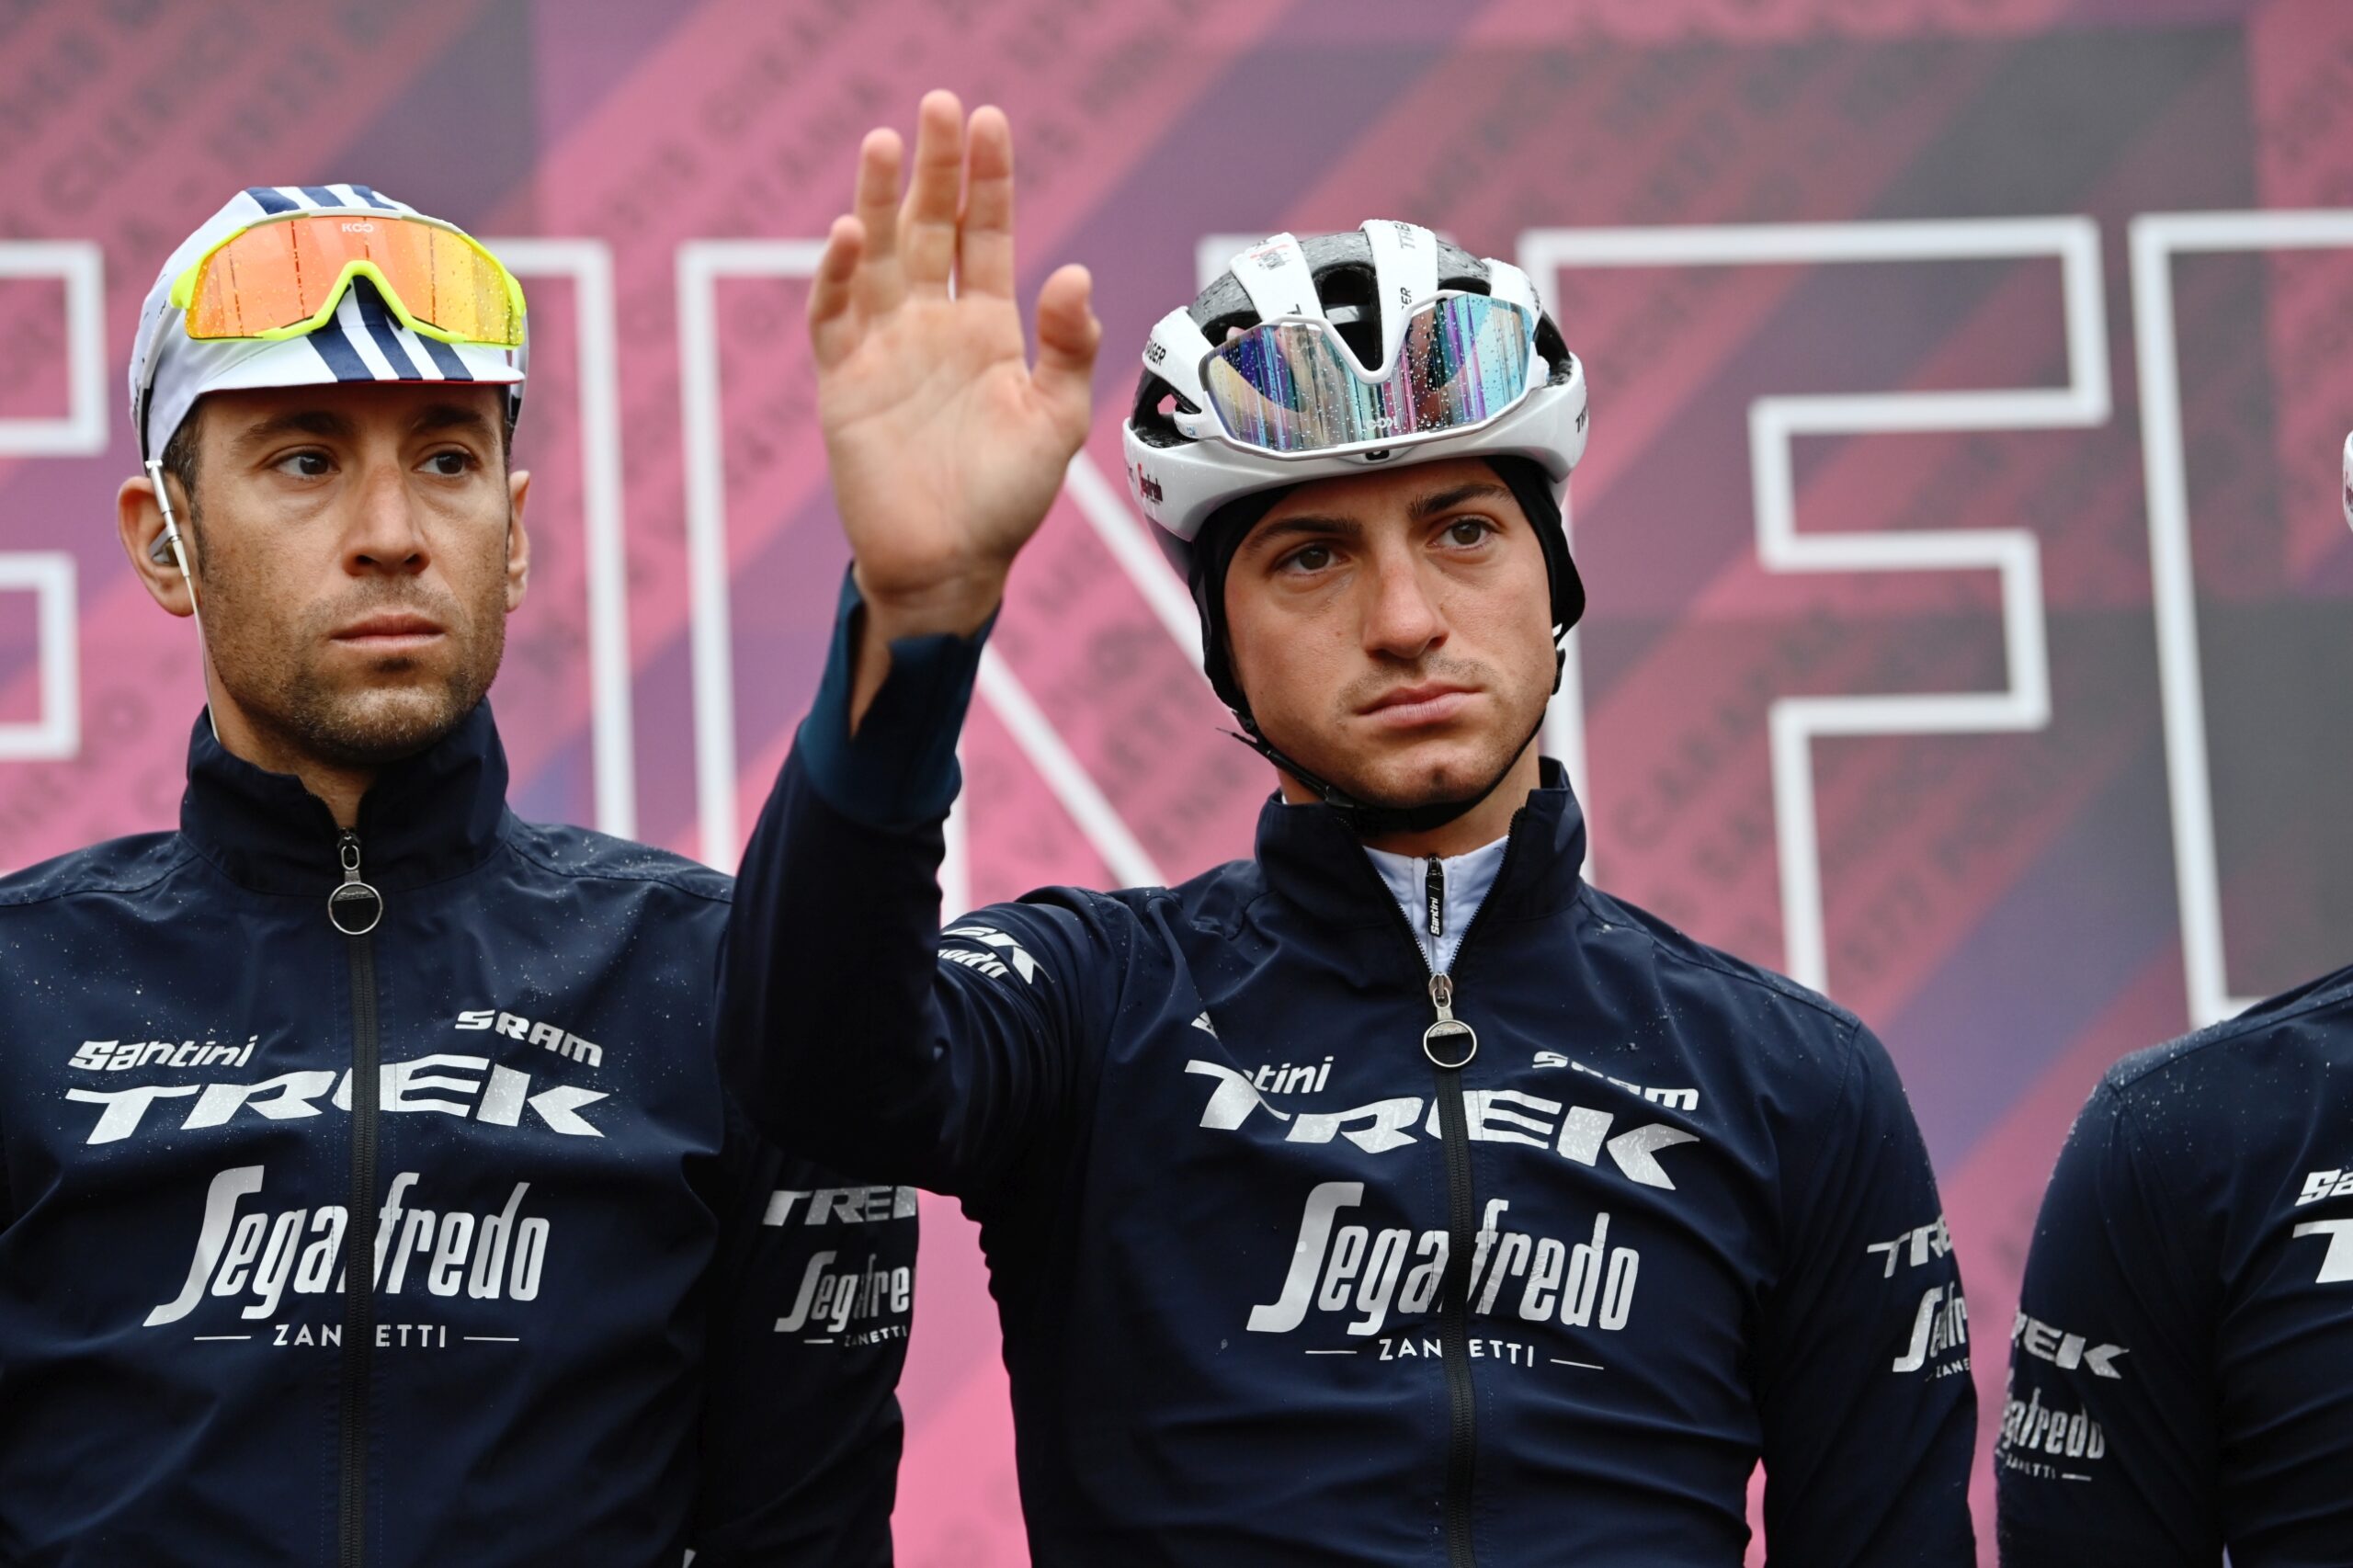 Giro d’Italia 2021. Giulio Ciccone pnie się ku podium